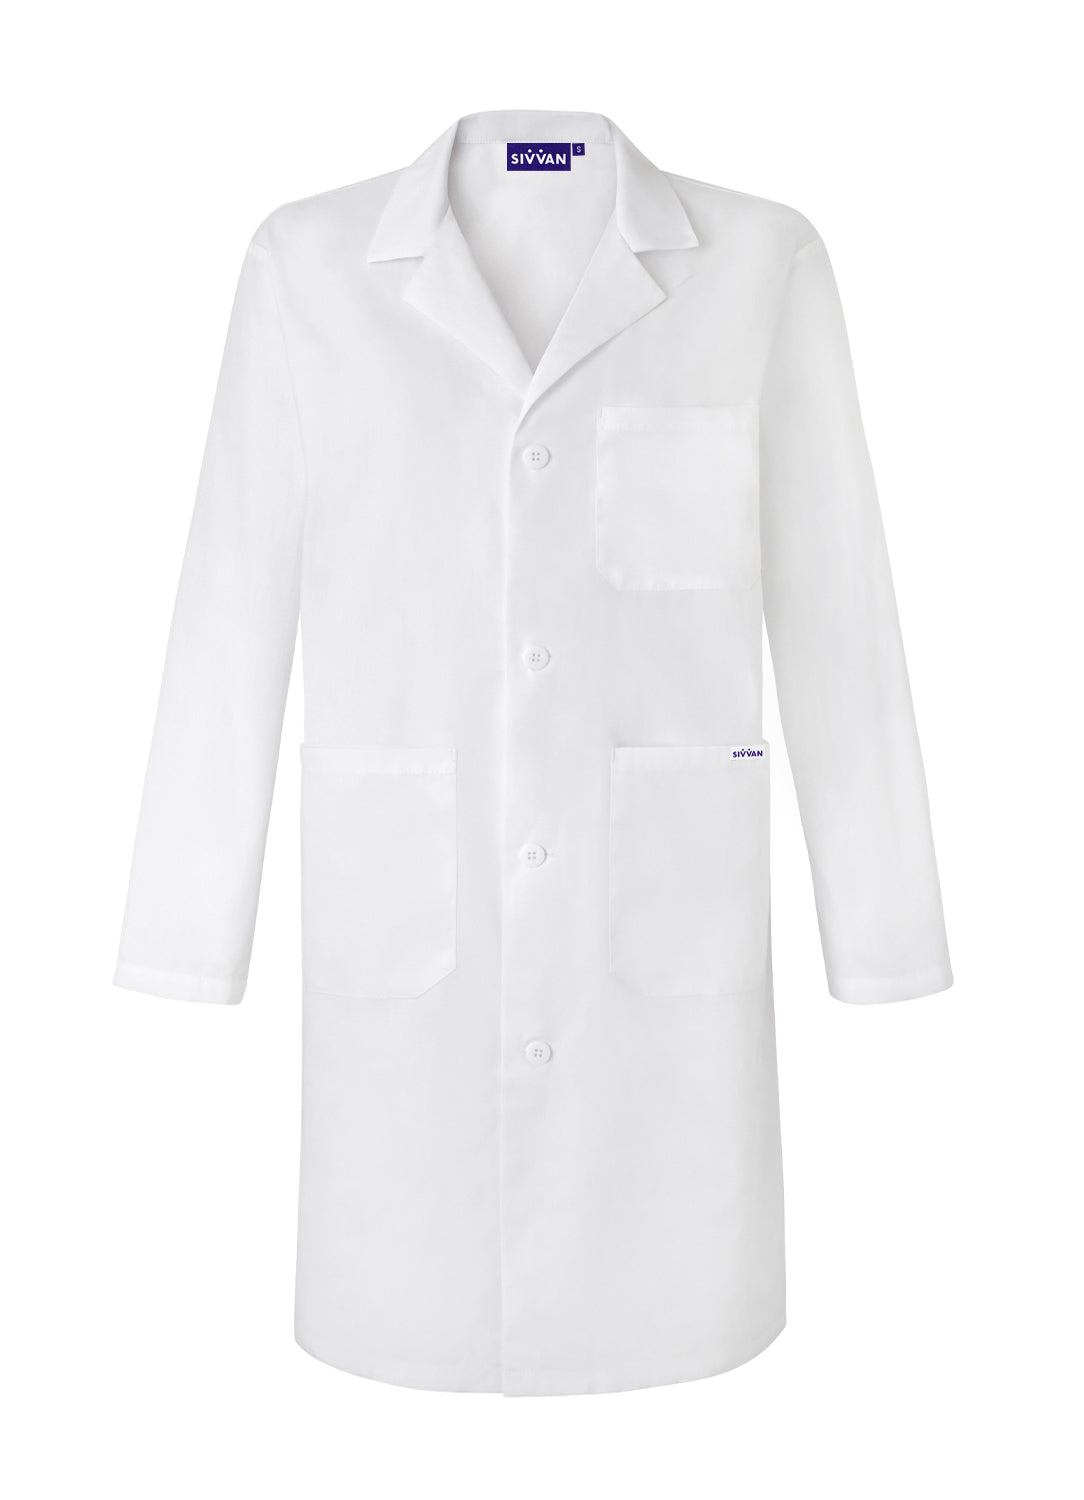 Sivvan 39" Unisex Professional Lab Coat